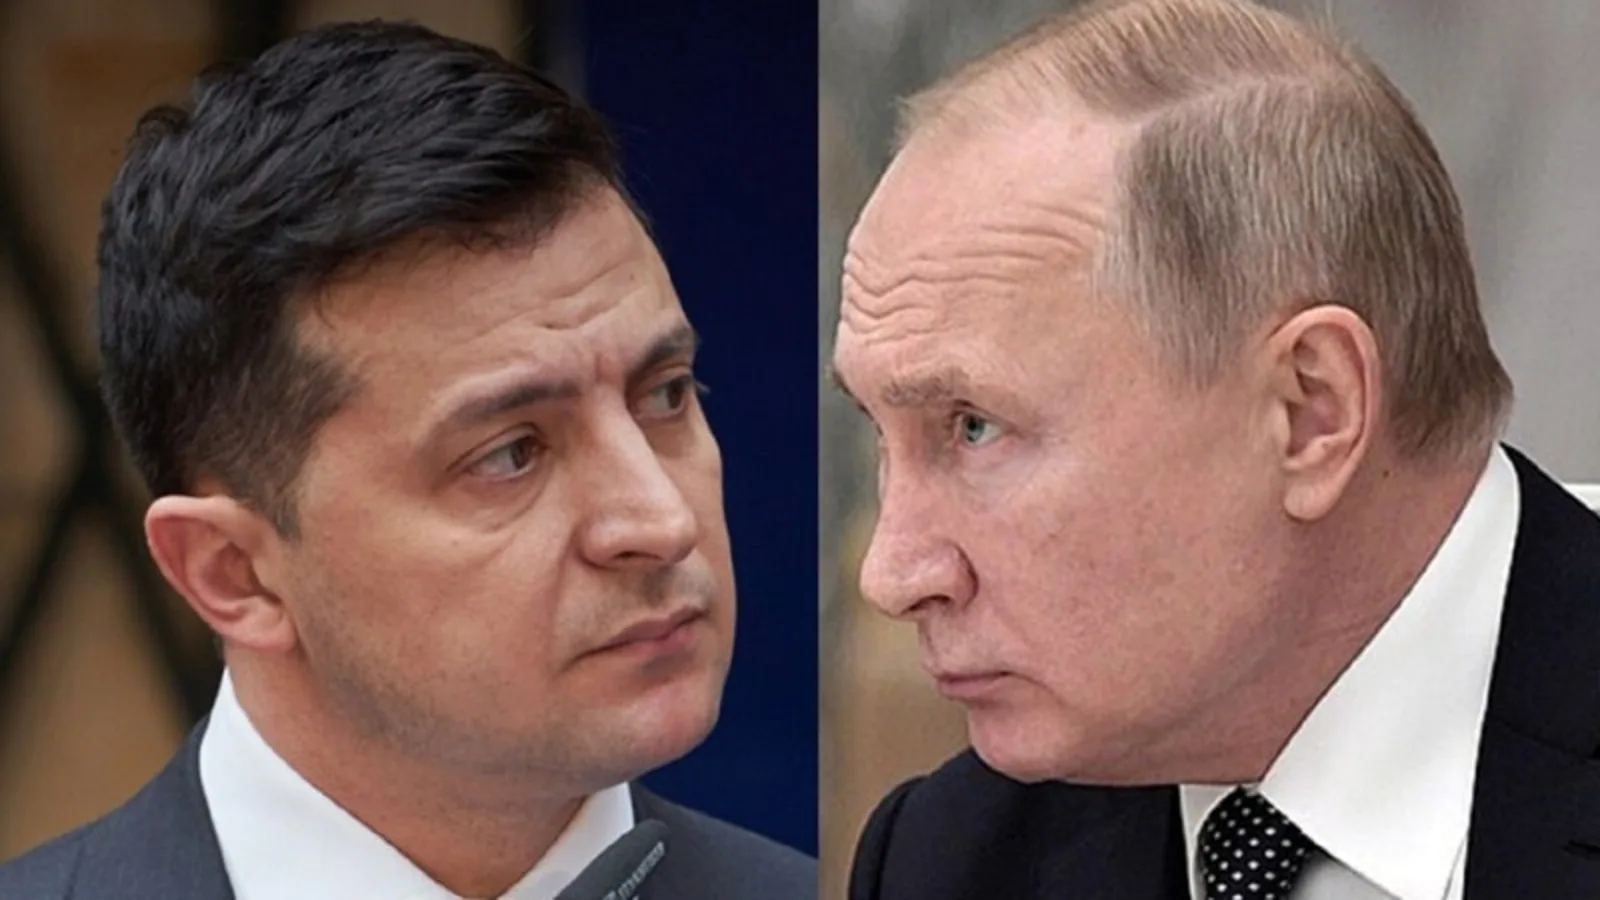 Kremlini: Jemi të hapur për negociata me Ukrainën, asgjë nuk ka ndryshuar